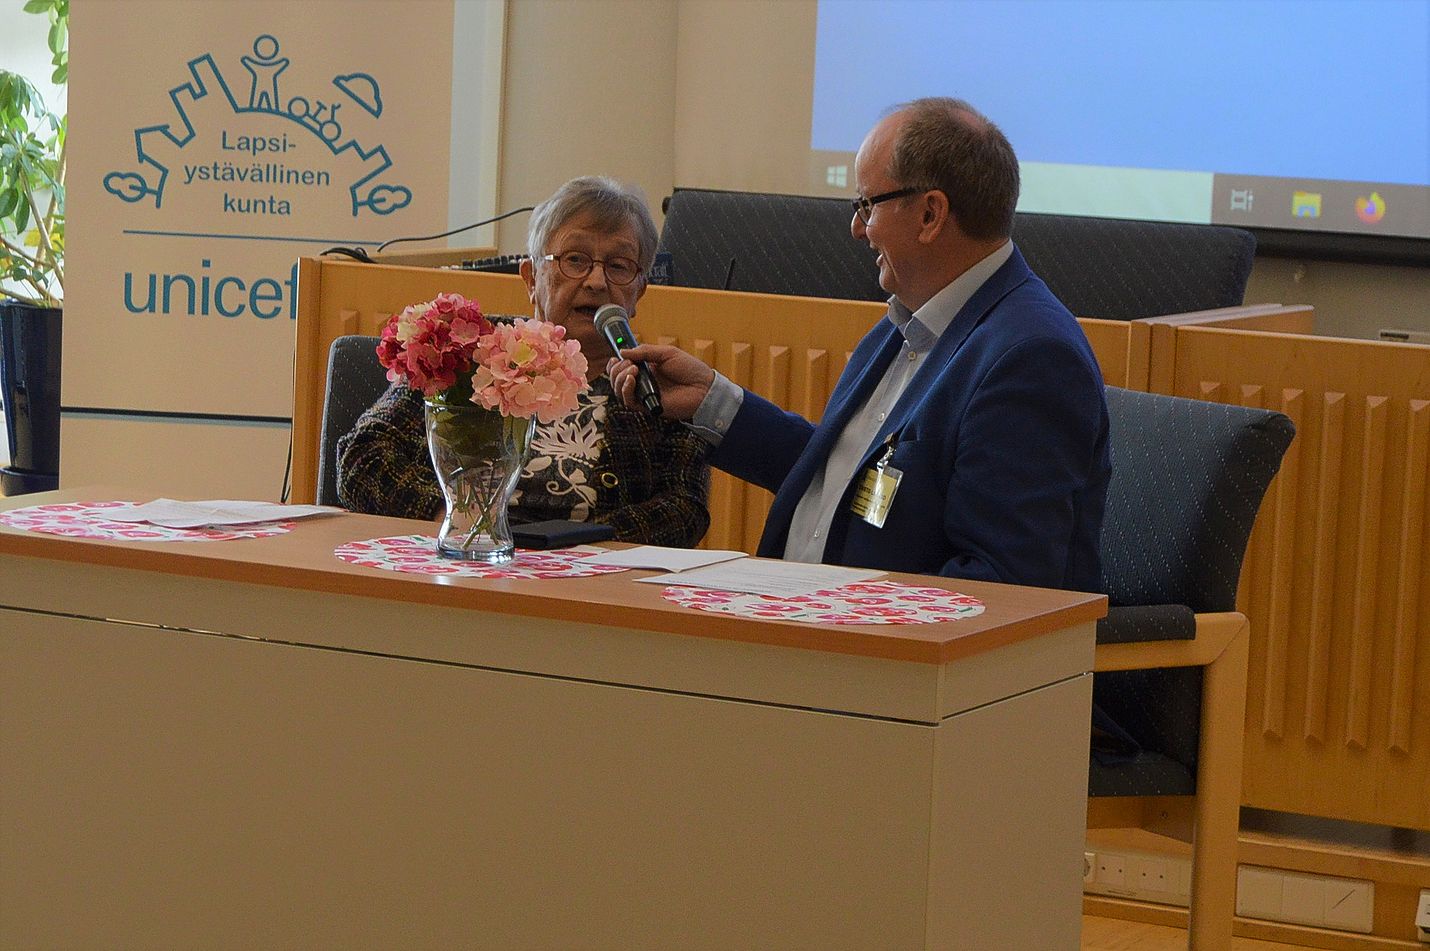 Luvialainen Irmeli Virtanen, 82, sai yleisön innostumaan suorasanaisilla ja humoristisillakin vastauksillaan. Häntä haastatteli Eurajoen kunnan vanhusneuvoston puheenjohtaja Taisto Laakso, radiostakin eri roolissa tuttu.